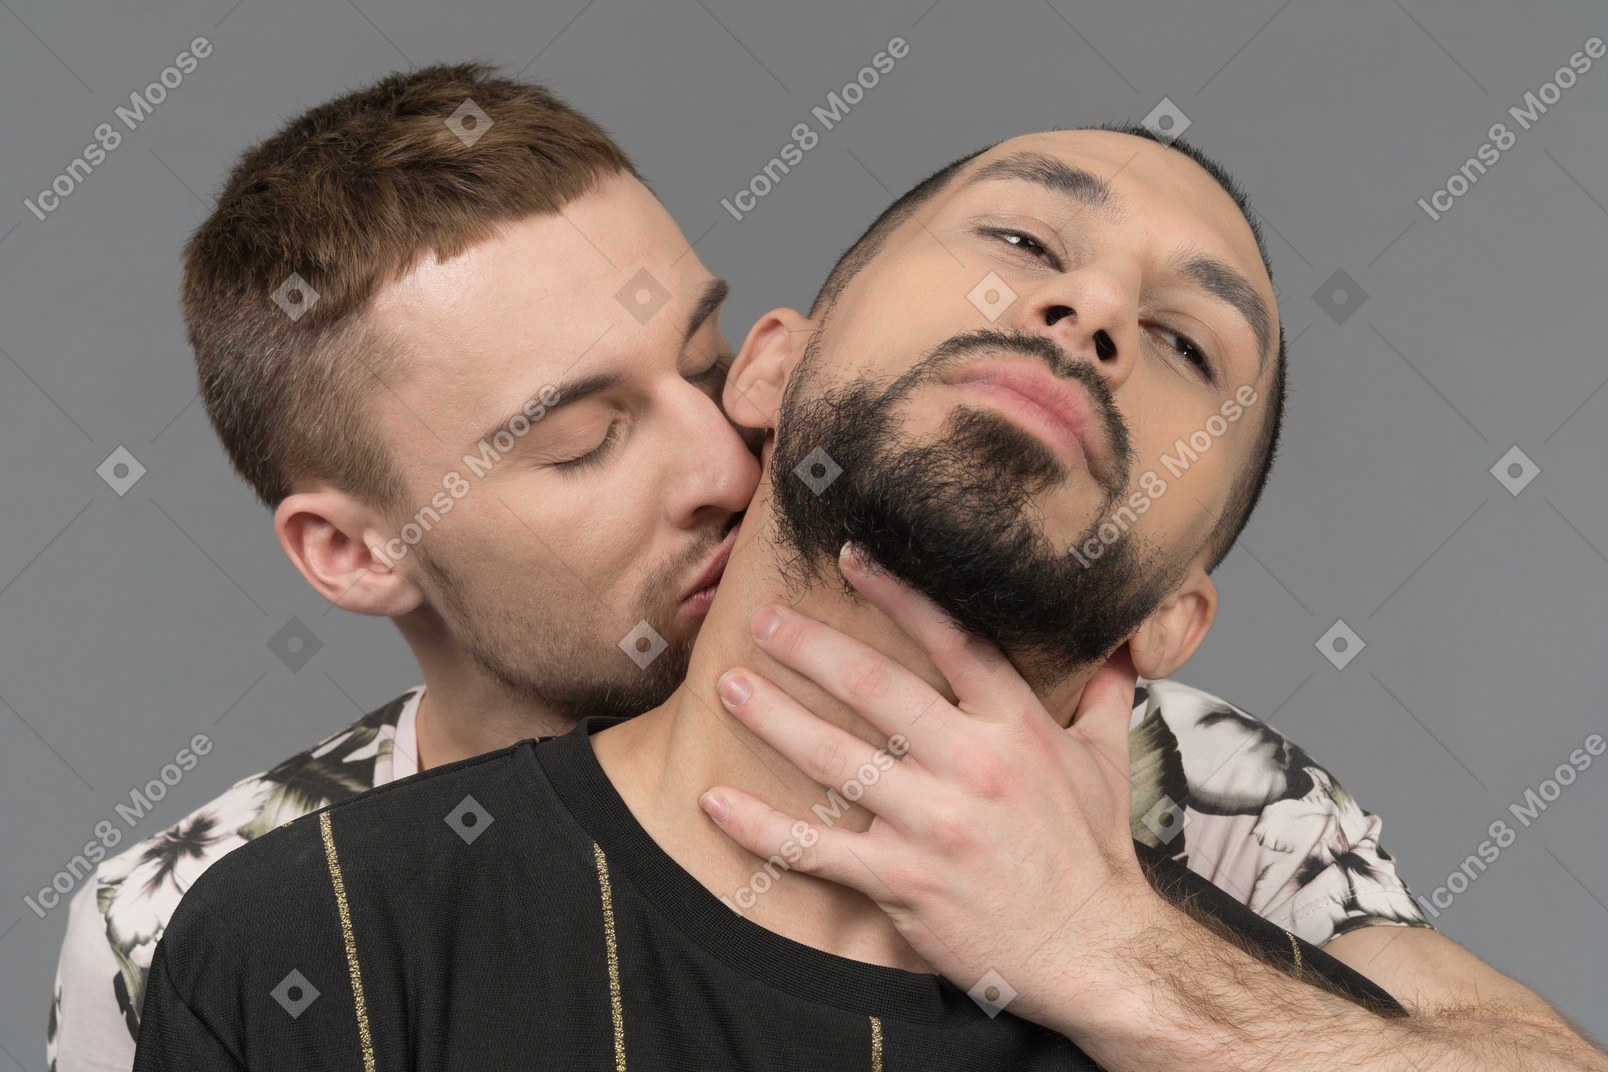 Giovane che bacia appassionatamente il collo del partner